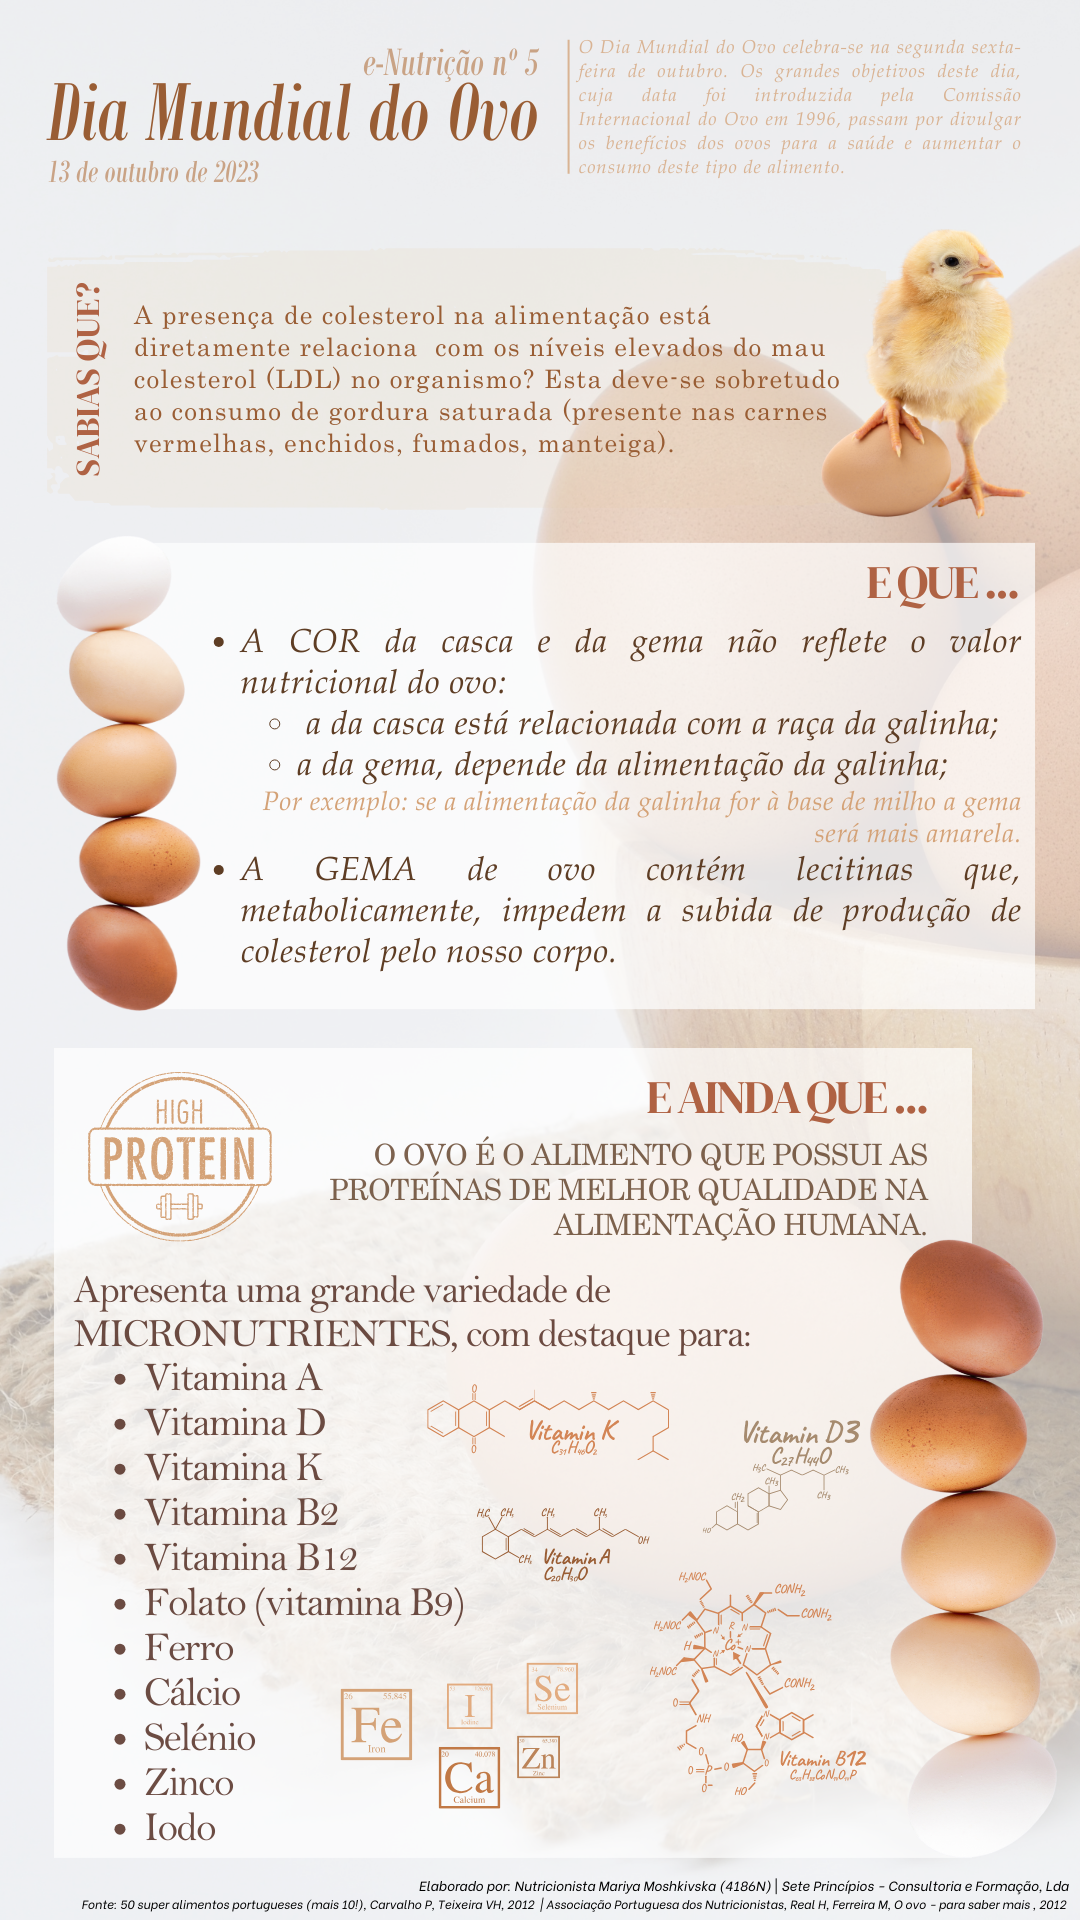 e-Nutrição nº 5 - Dia Mundial do Ovo